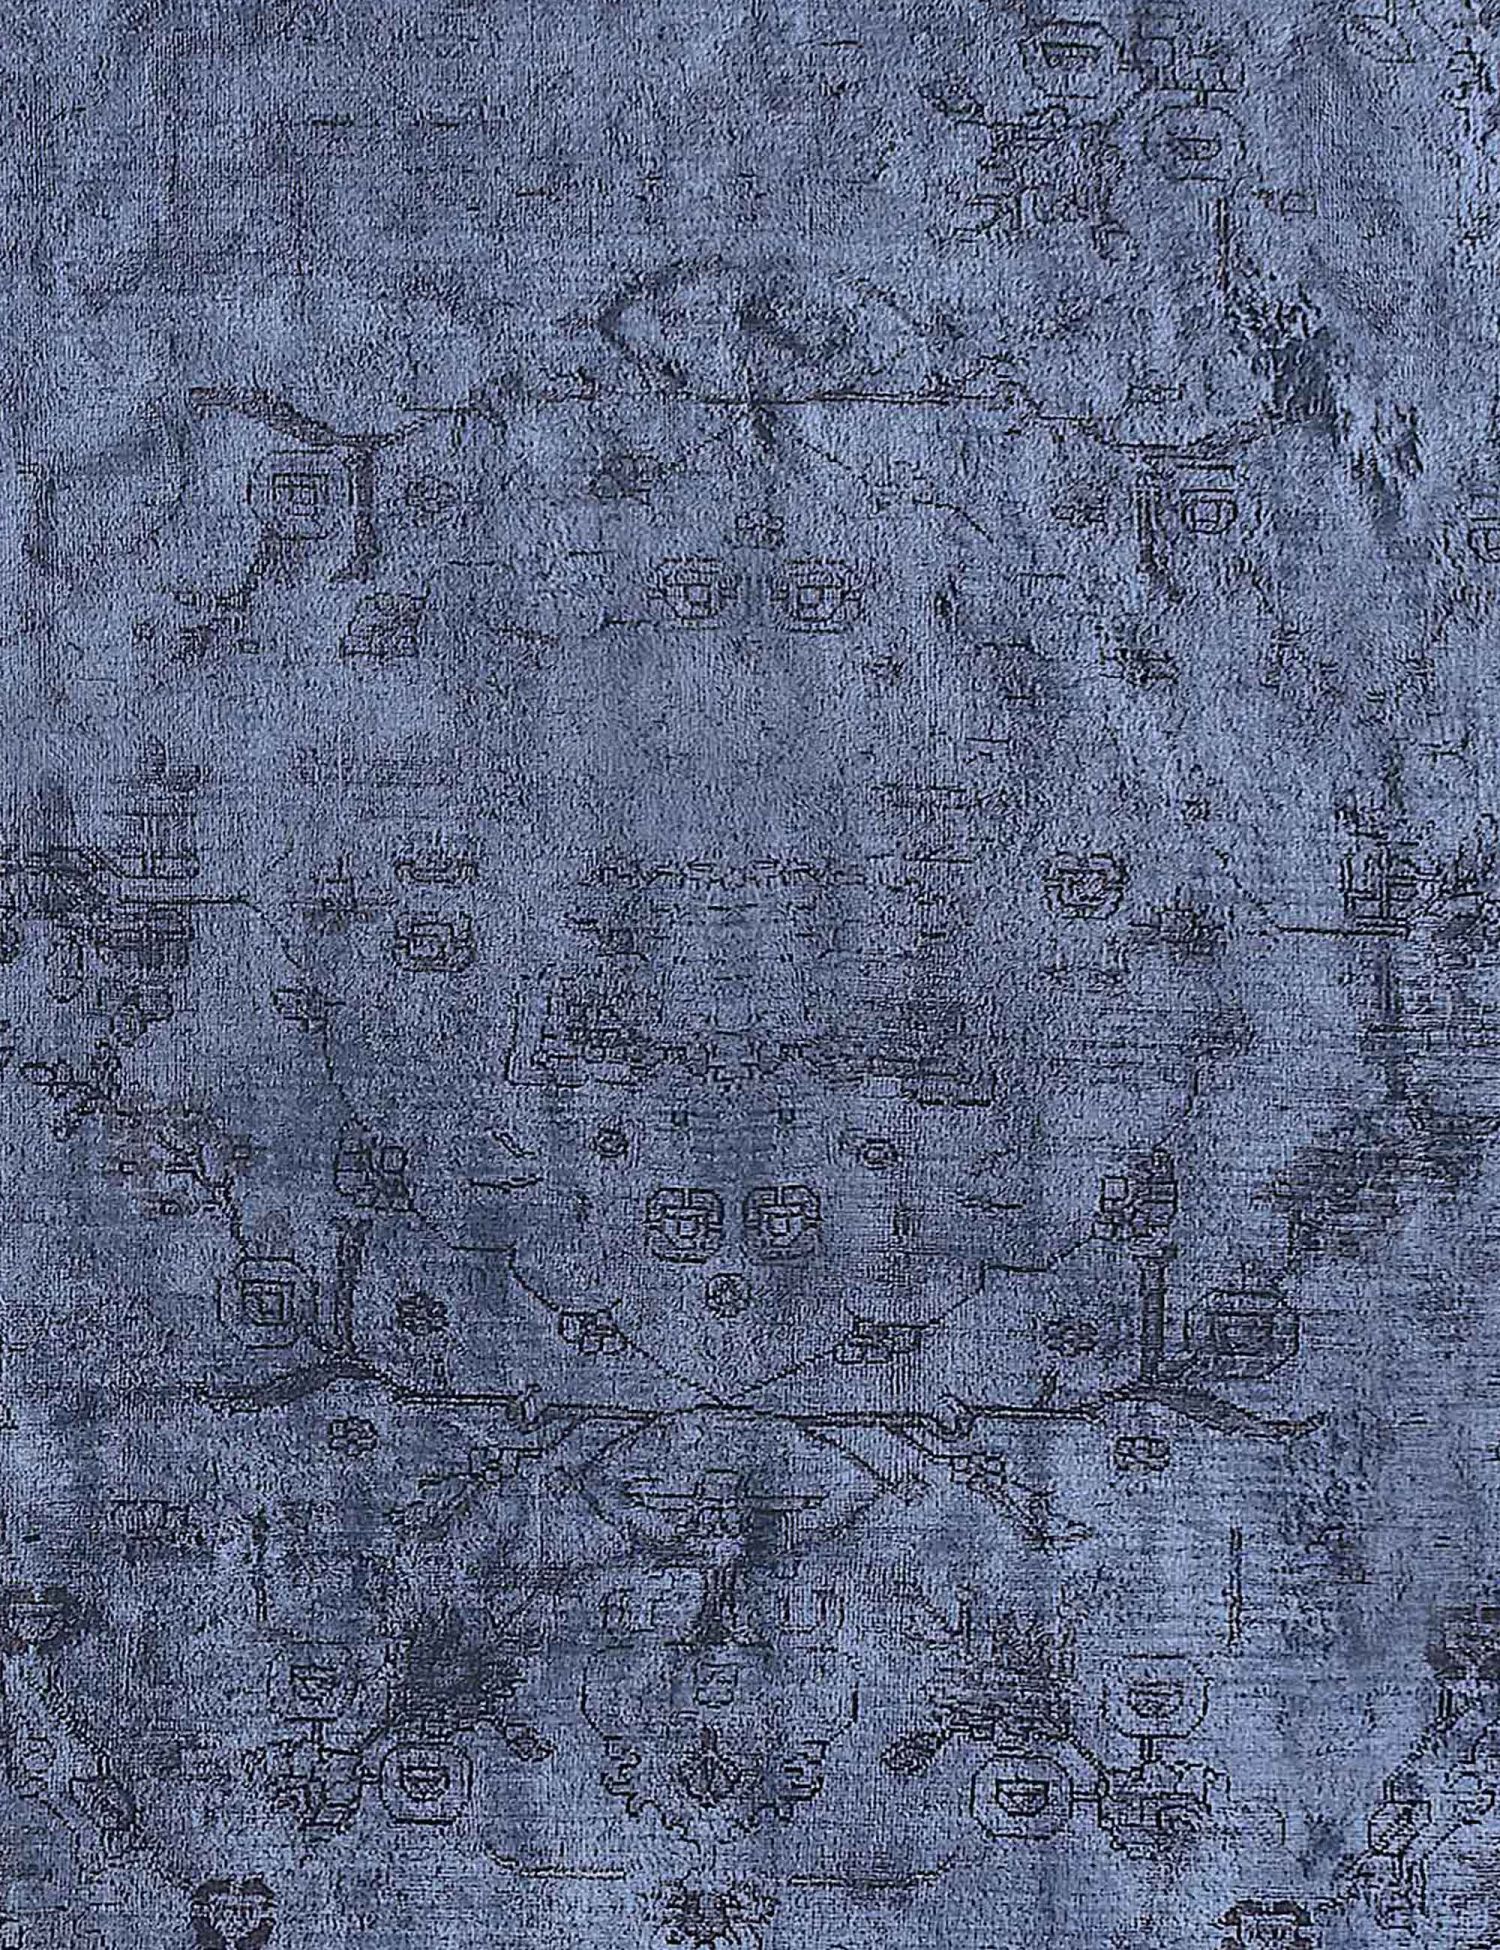 Persischer Vintage Teppich  blau <br/>335 x 238 cm